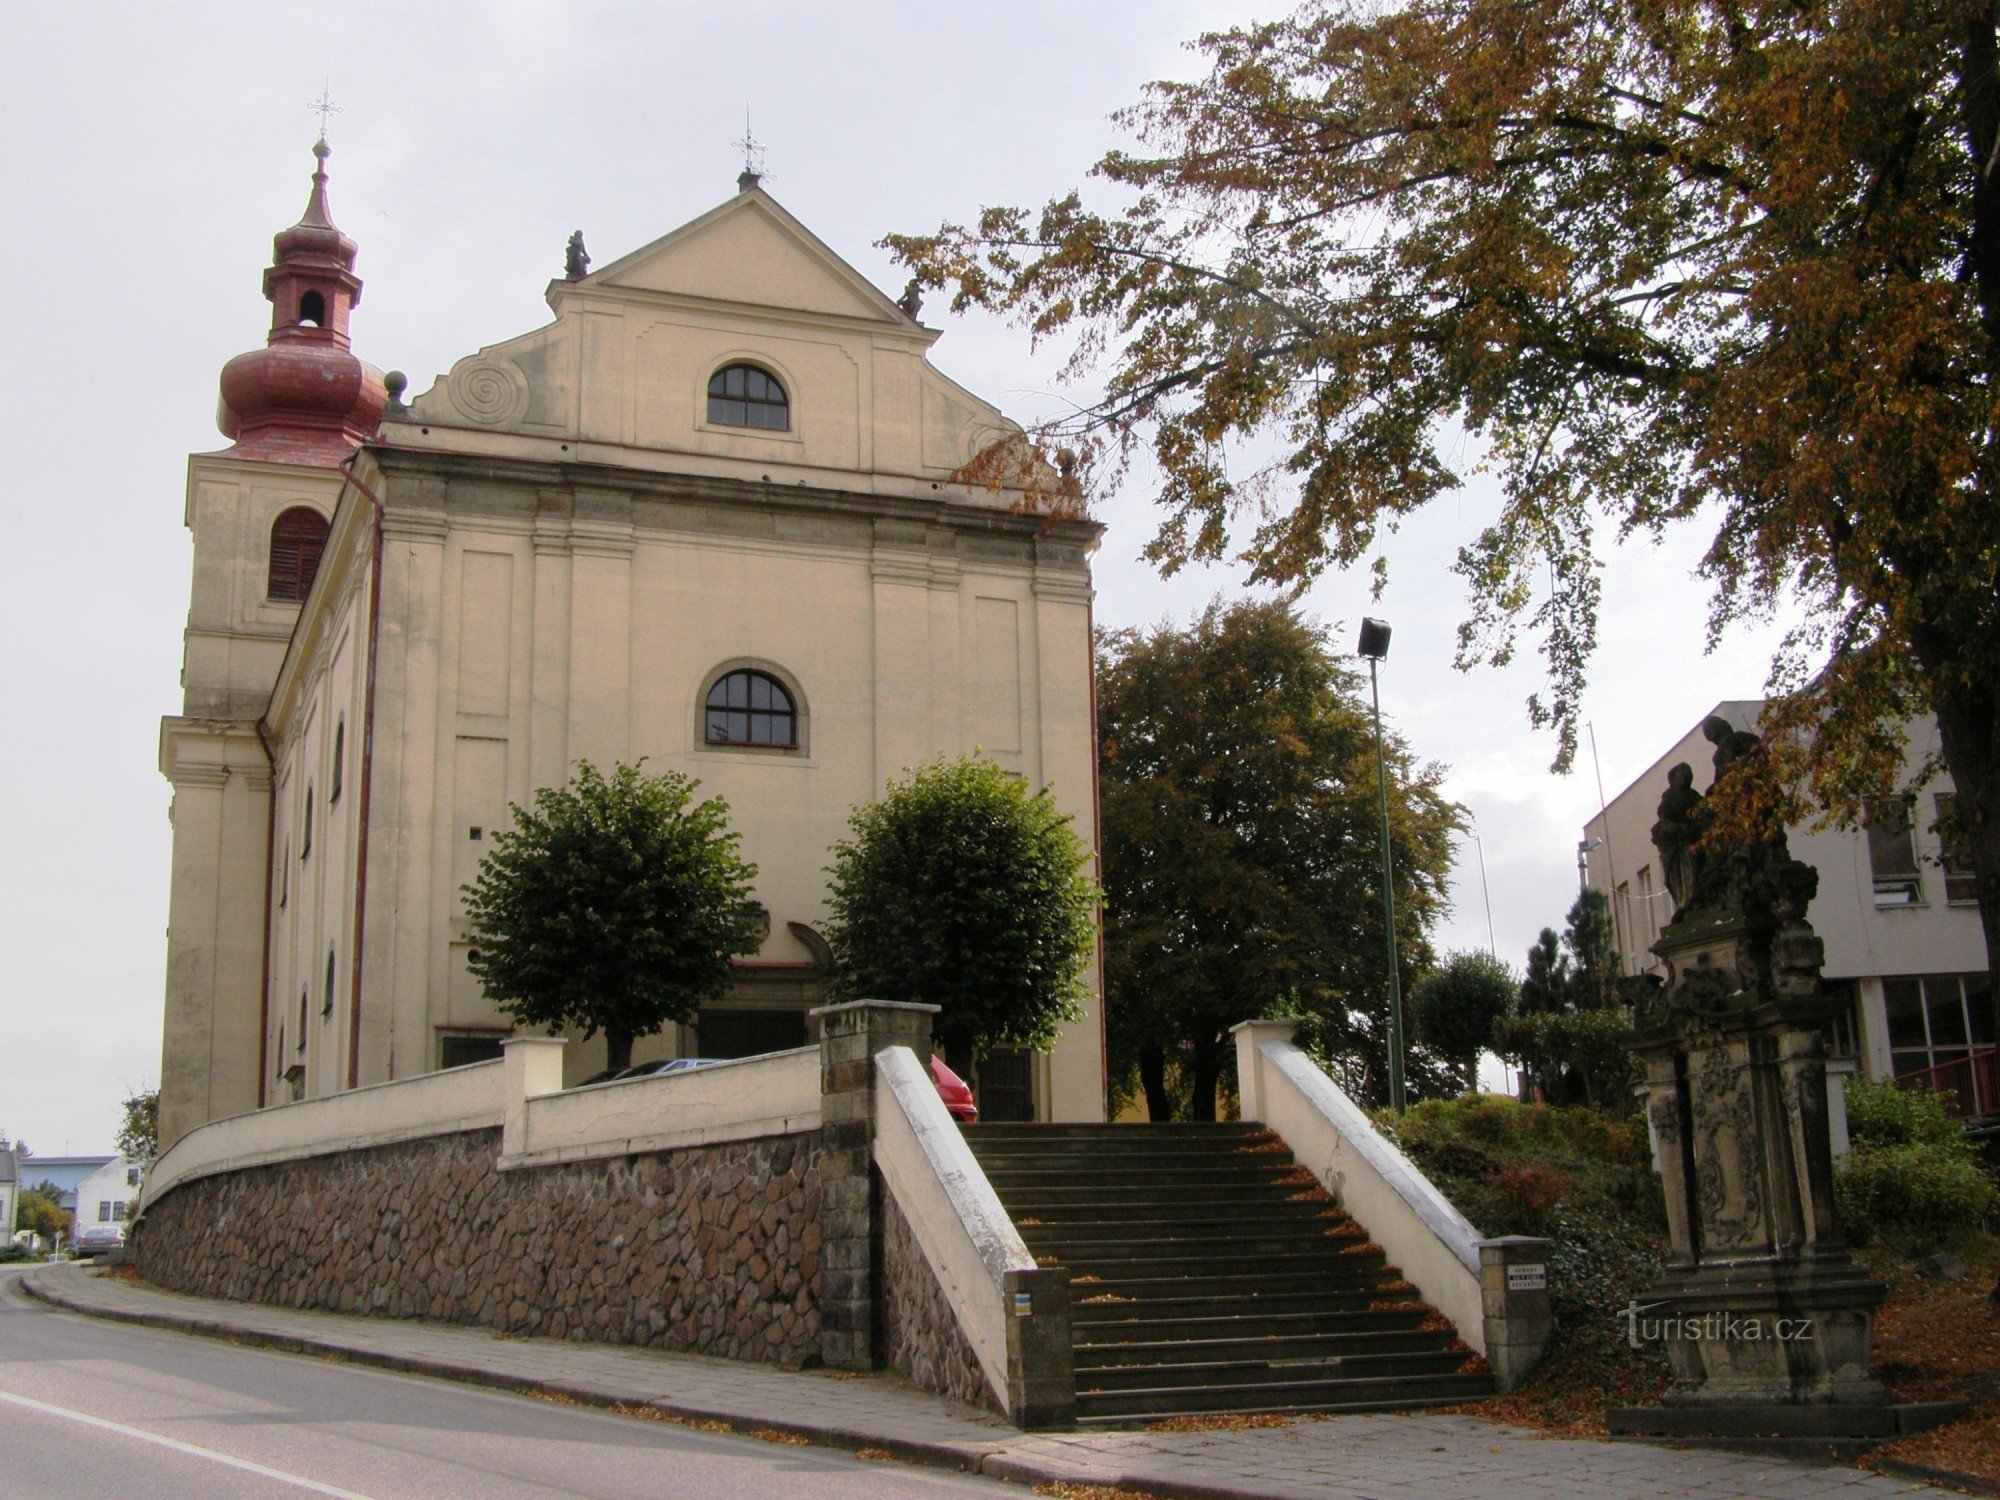 Vamberk - Iglesia de St. Procopio